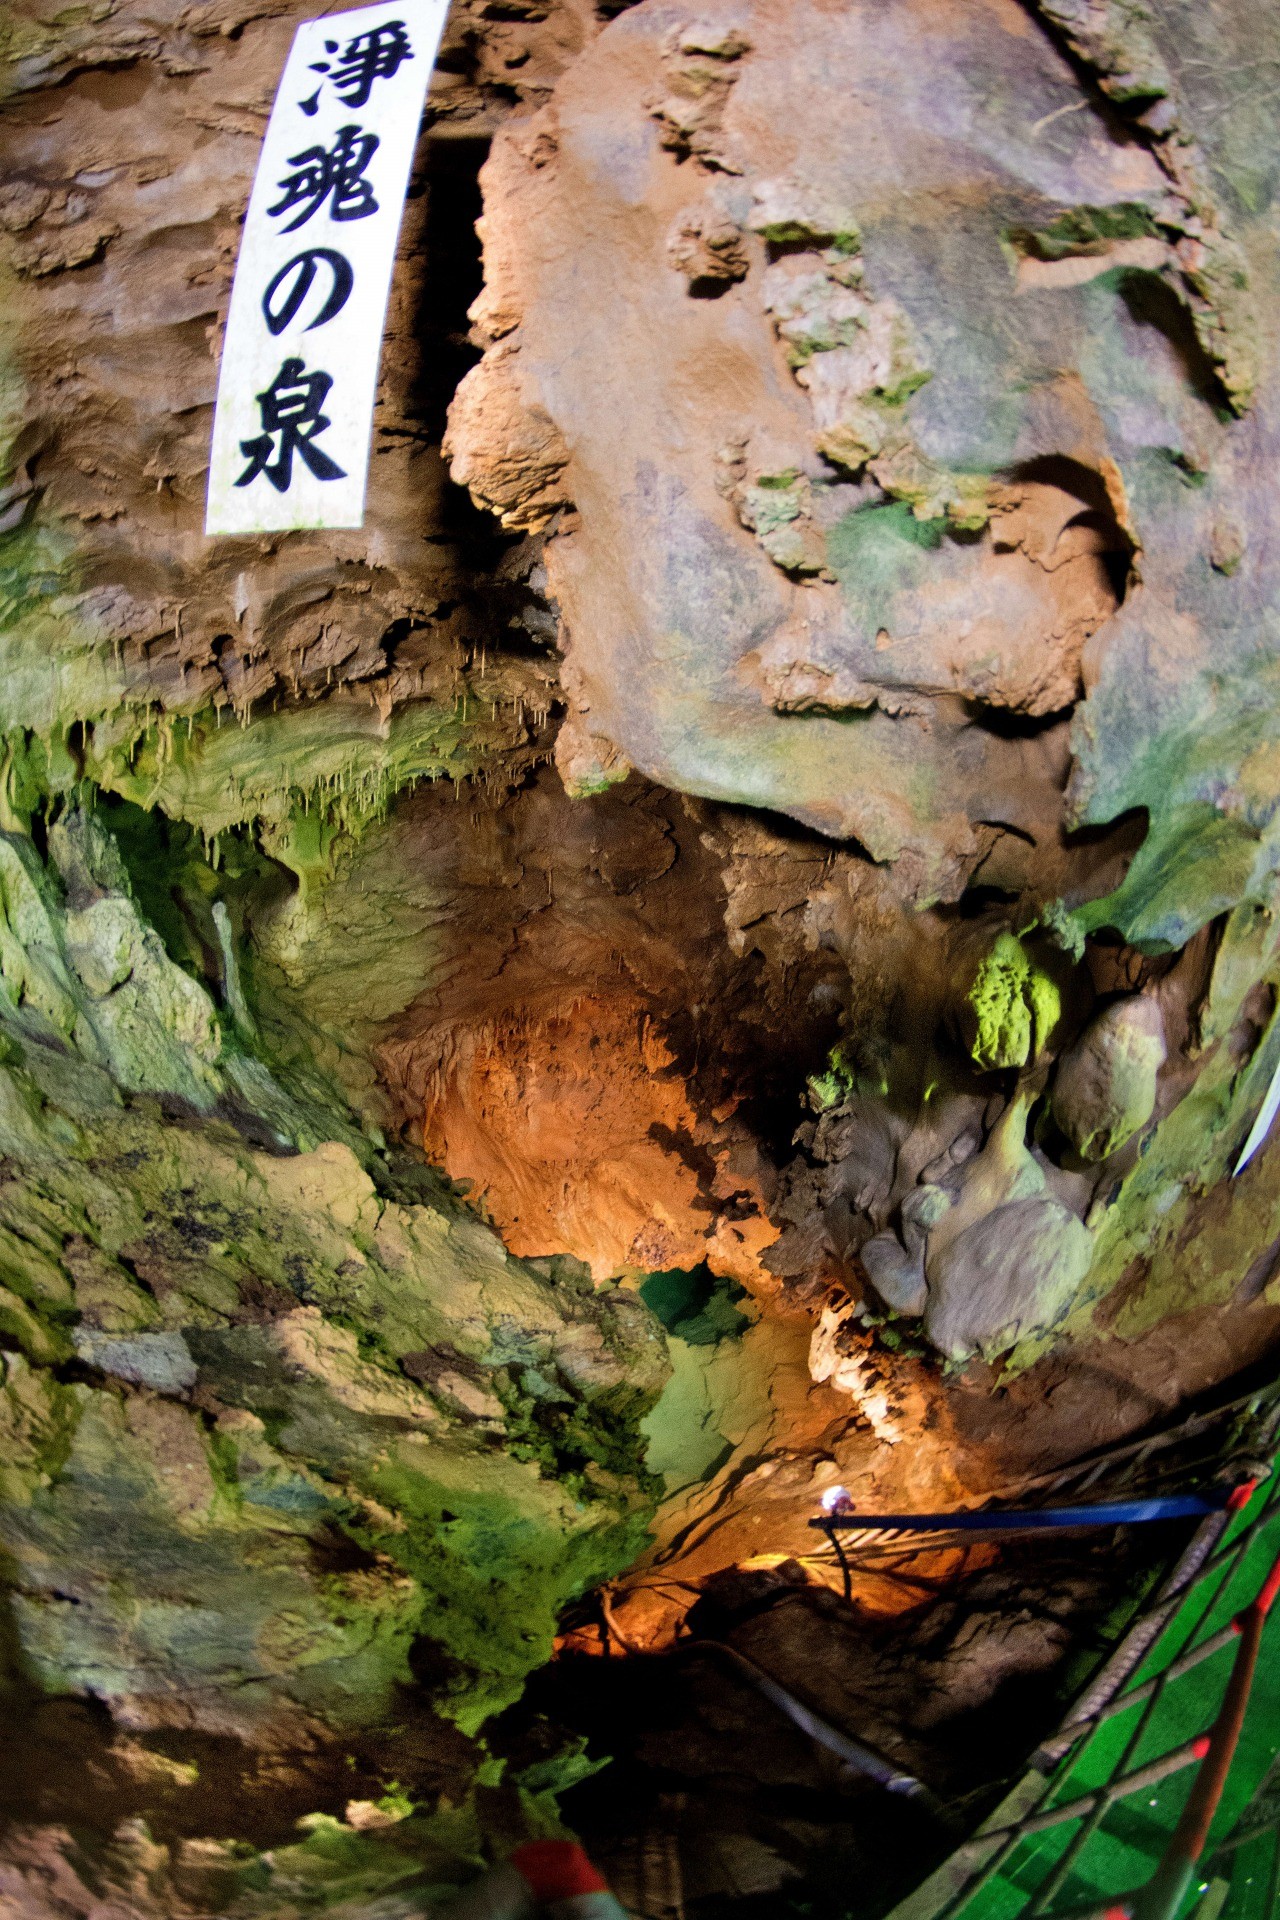 Yugendo Cave